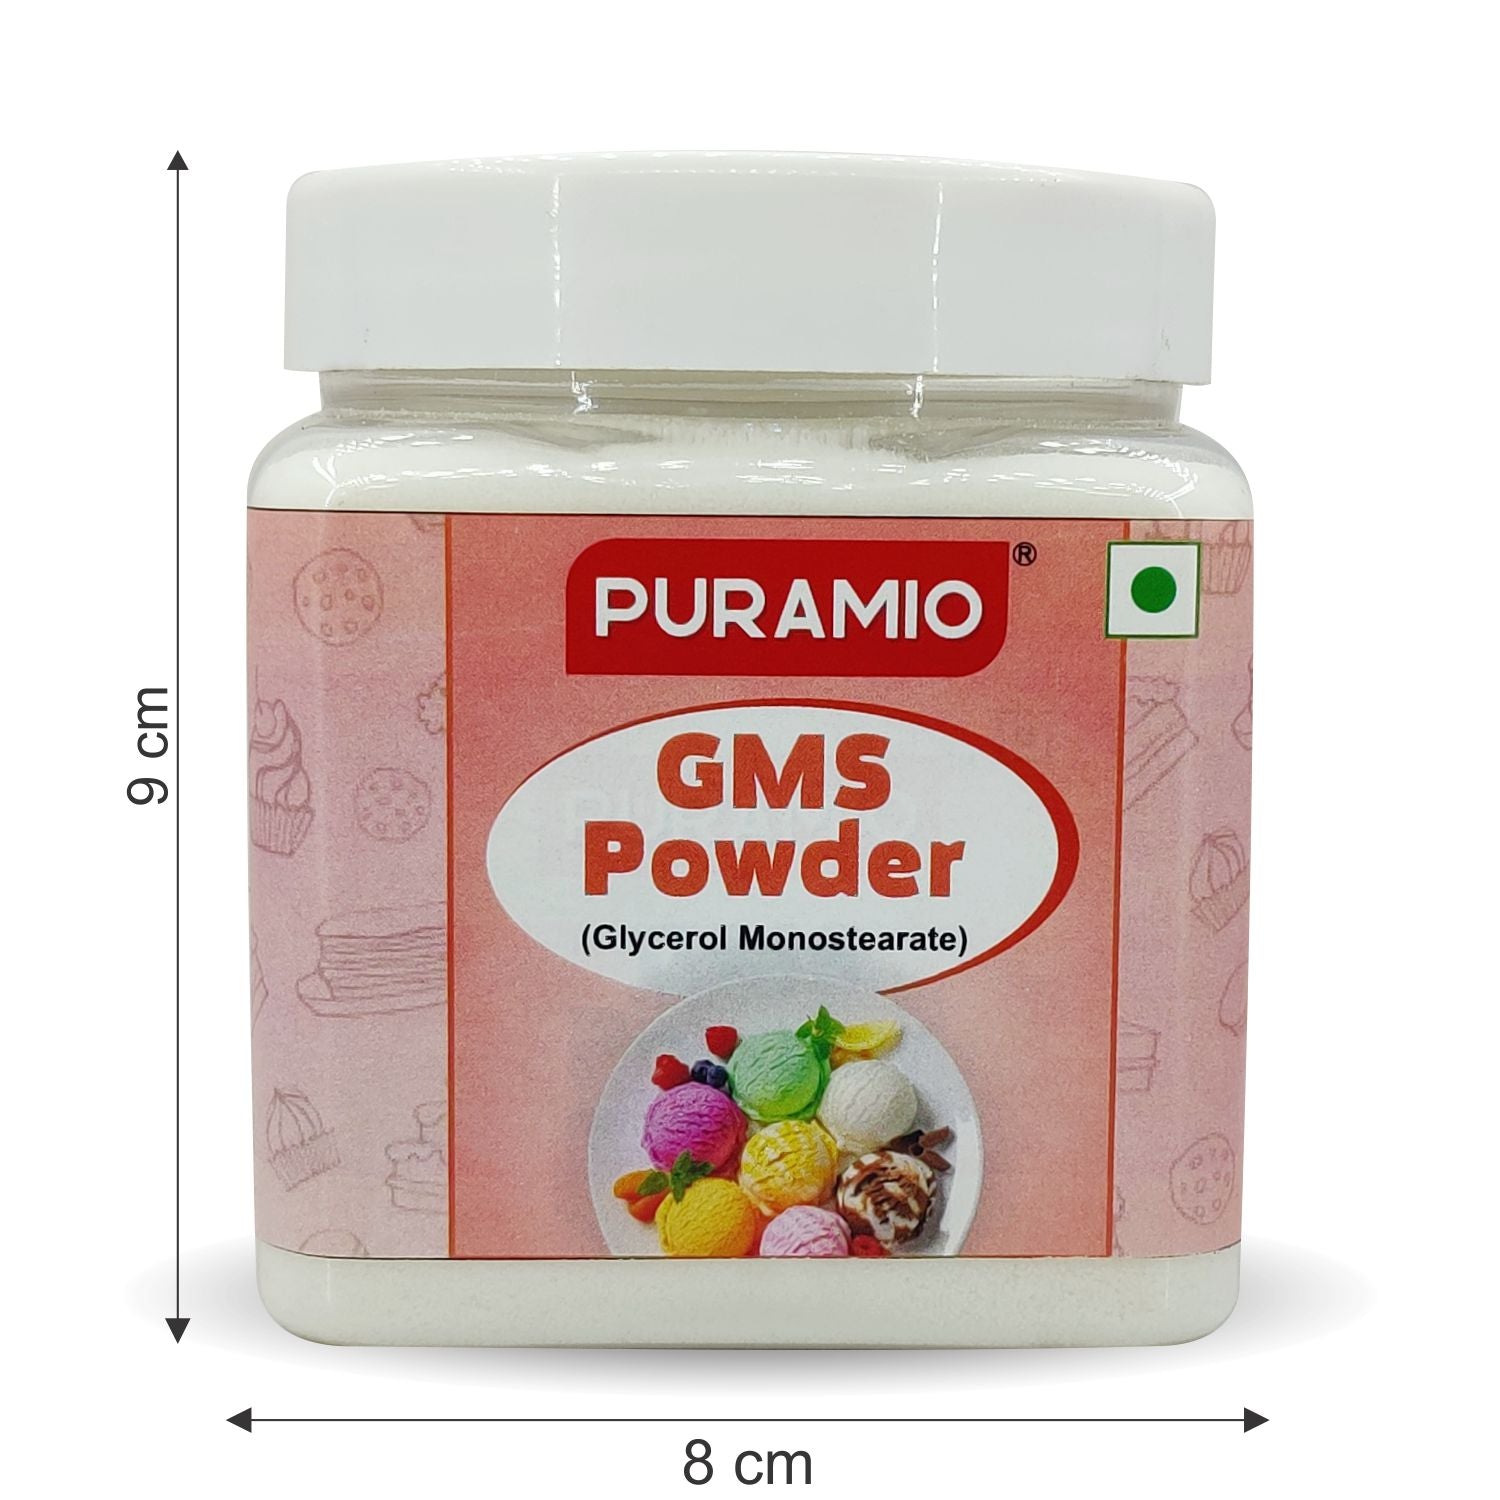 PURAMIO Sodium Alginate, for Stabilizer,Thickening,, 800g Raising  Ingredient Powder Price in India - Buy PURAMIO Sodium Alginate, for  Stabilizer,Thickening,, 800g Raising Ingredient Powder online at